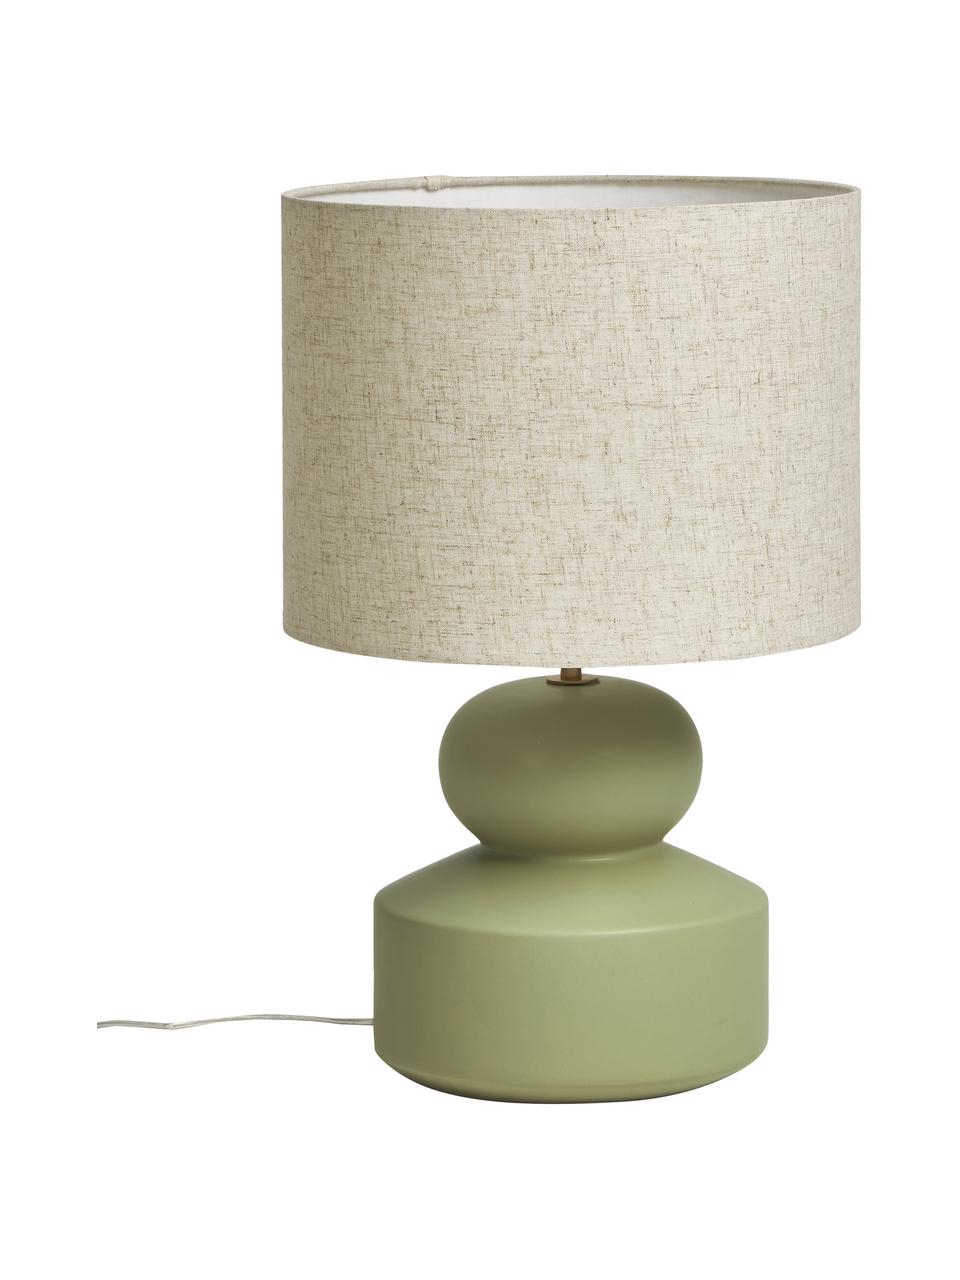 Grote keramische tafellamp Georgina in groen, Lampenkap: textiel, Lampvoet: keramiek, Decoratie: vermessingd metaal, Groen, beige, Ø 33 x H 52 cm